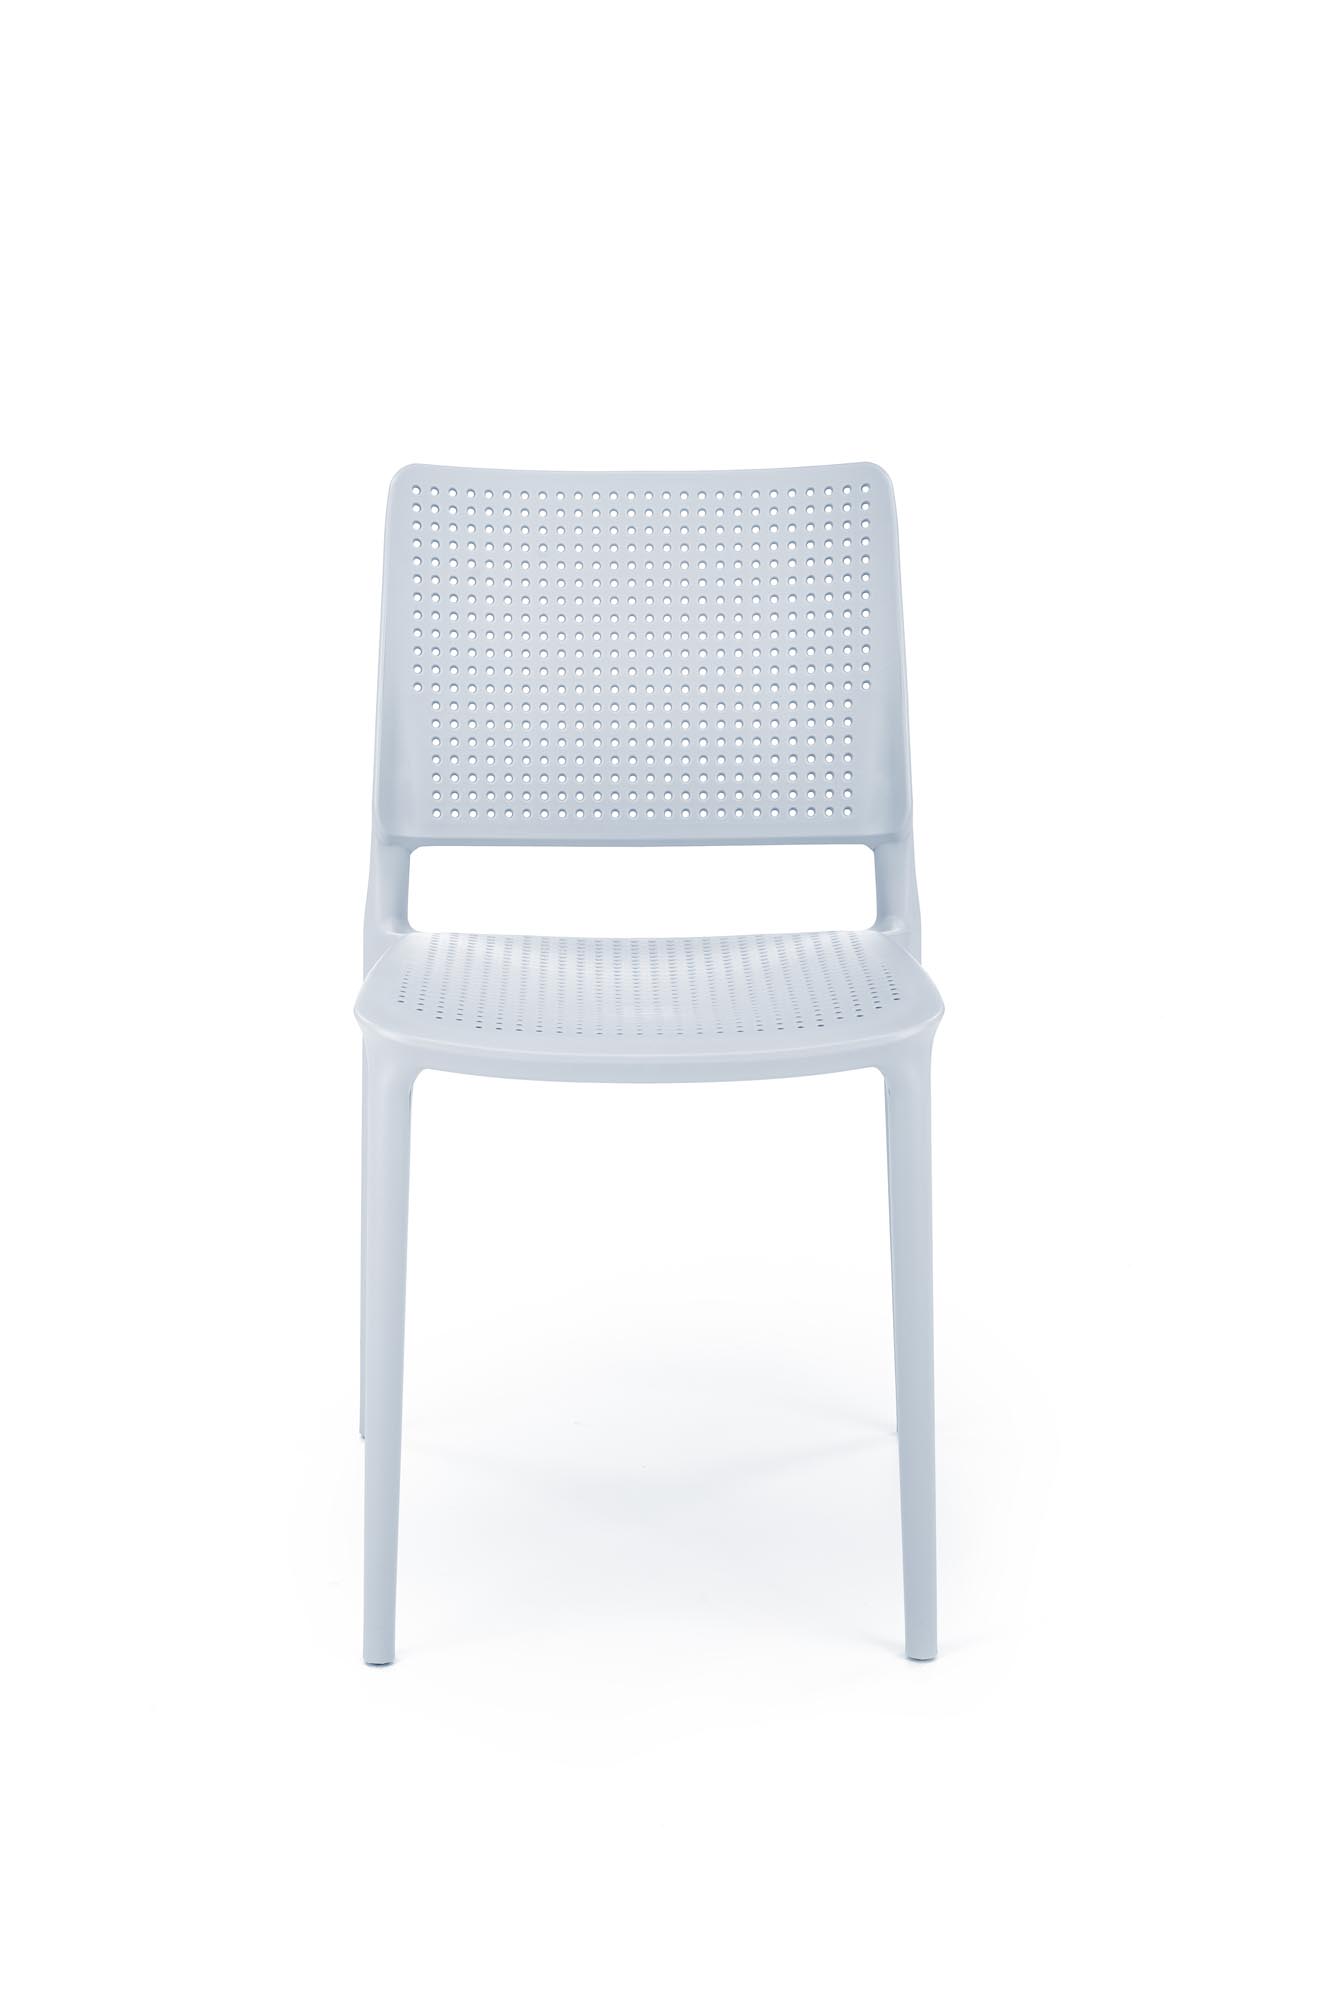 K514 Židle jasný Modrý (1p=4szt) židle z tworzywa k514 - jasný Modrý